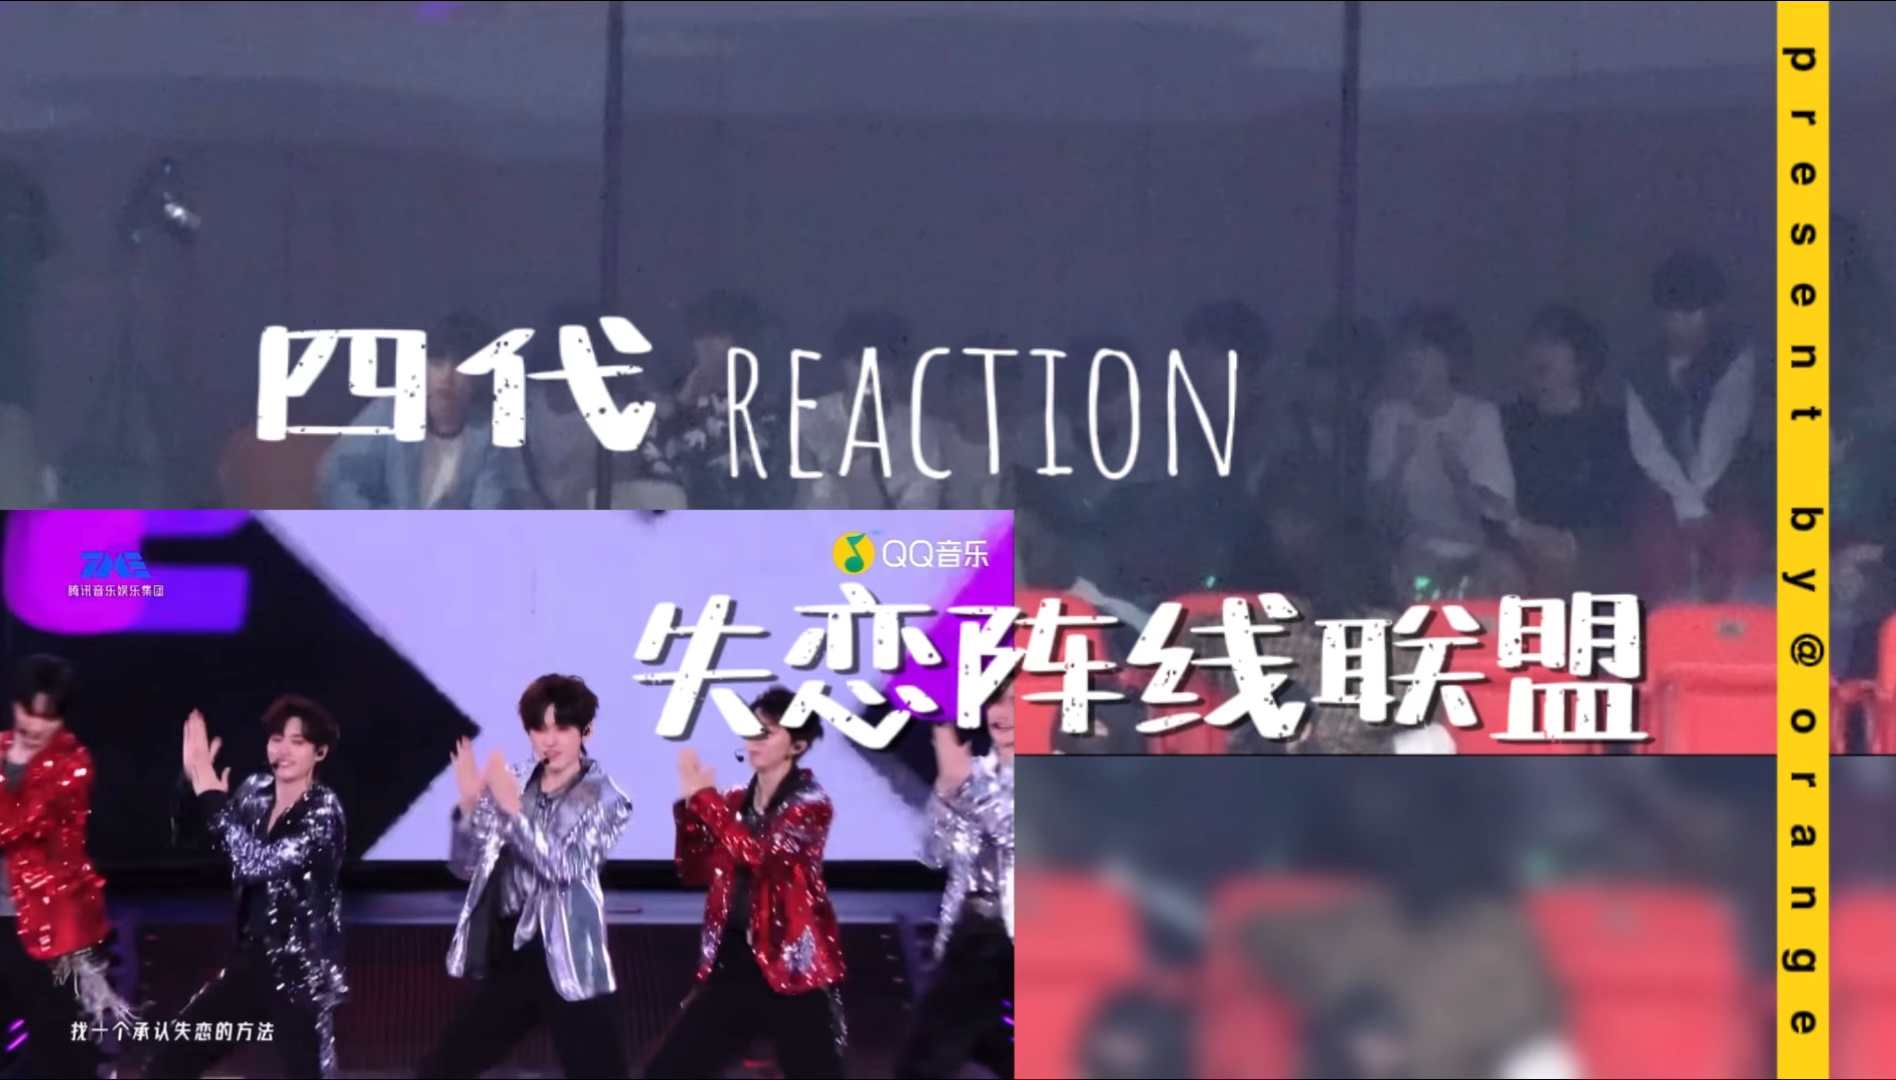 【四代reaction】时团重庆演唱会《失恋阵线联盟》小四四们怎么这么激动